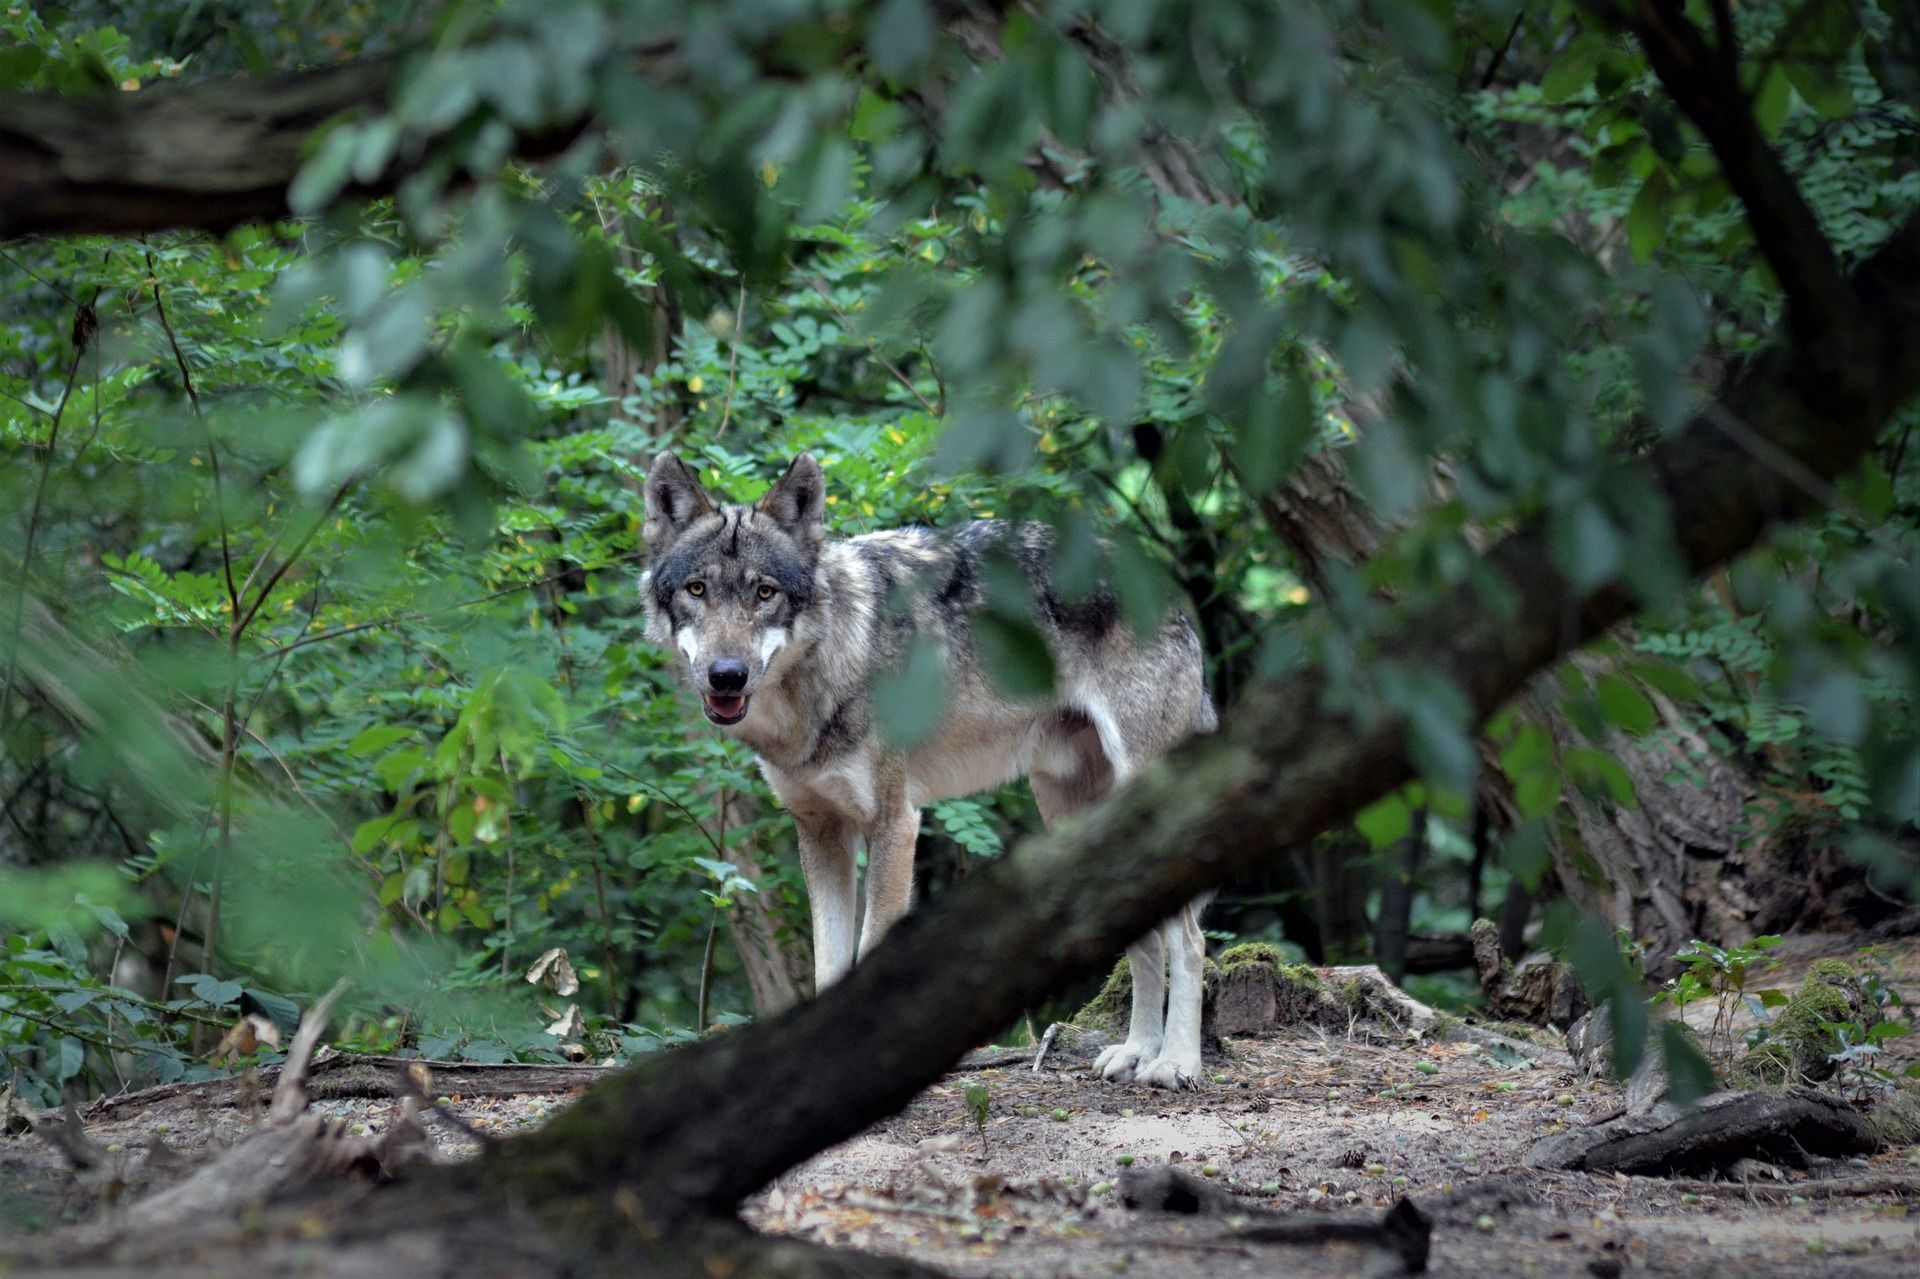 'Vivir con lobos' es la campaña de Ecologistas en Acción para impulsar la coexistencia de la ganadería extensiva y el lobo / Foto:  Insa Osterhagen - Pixabay